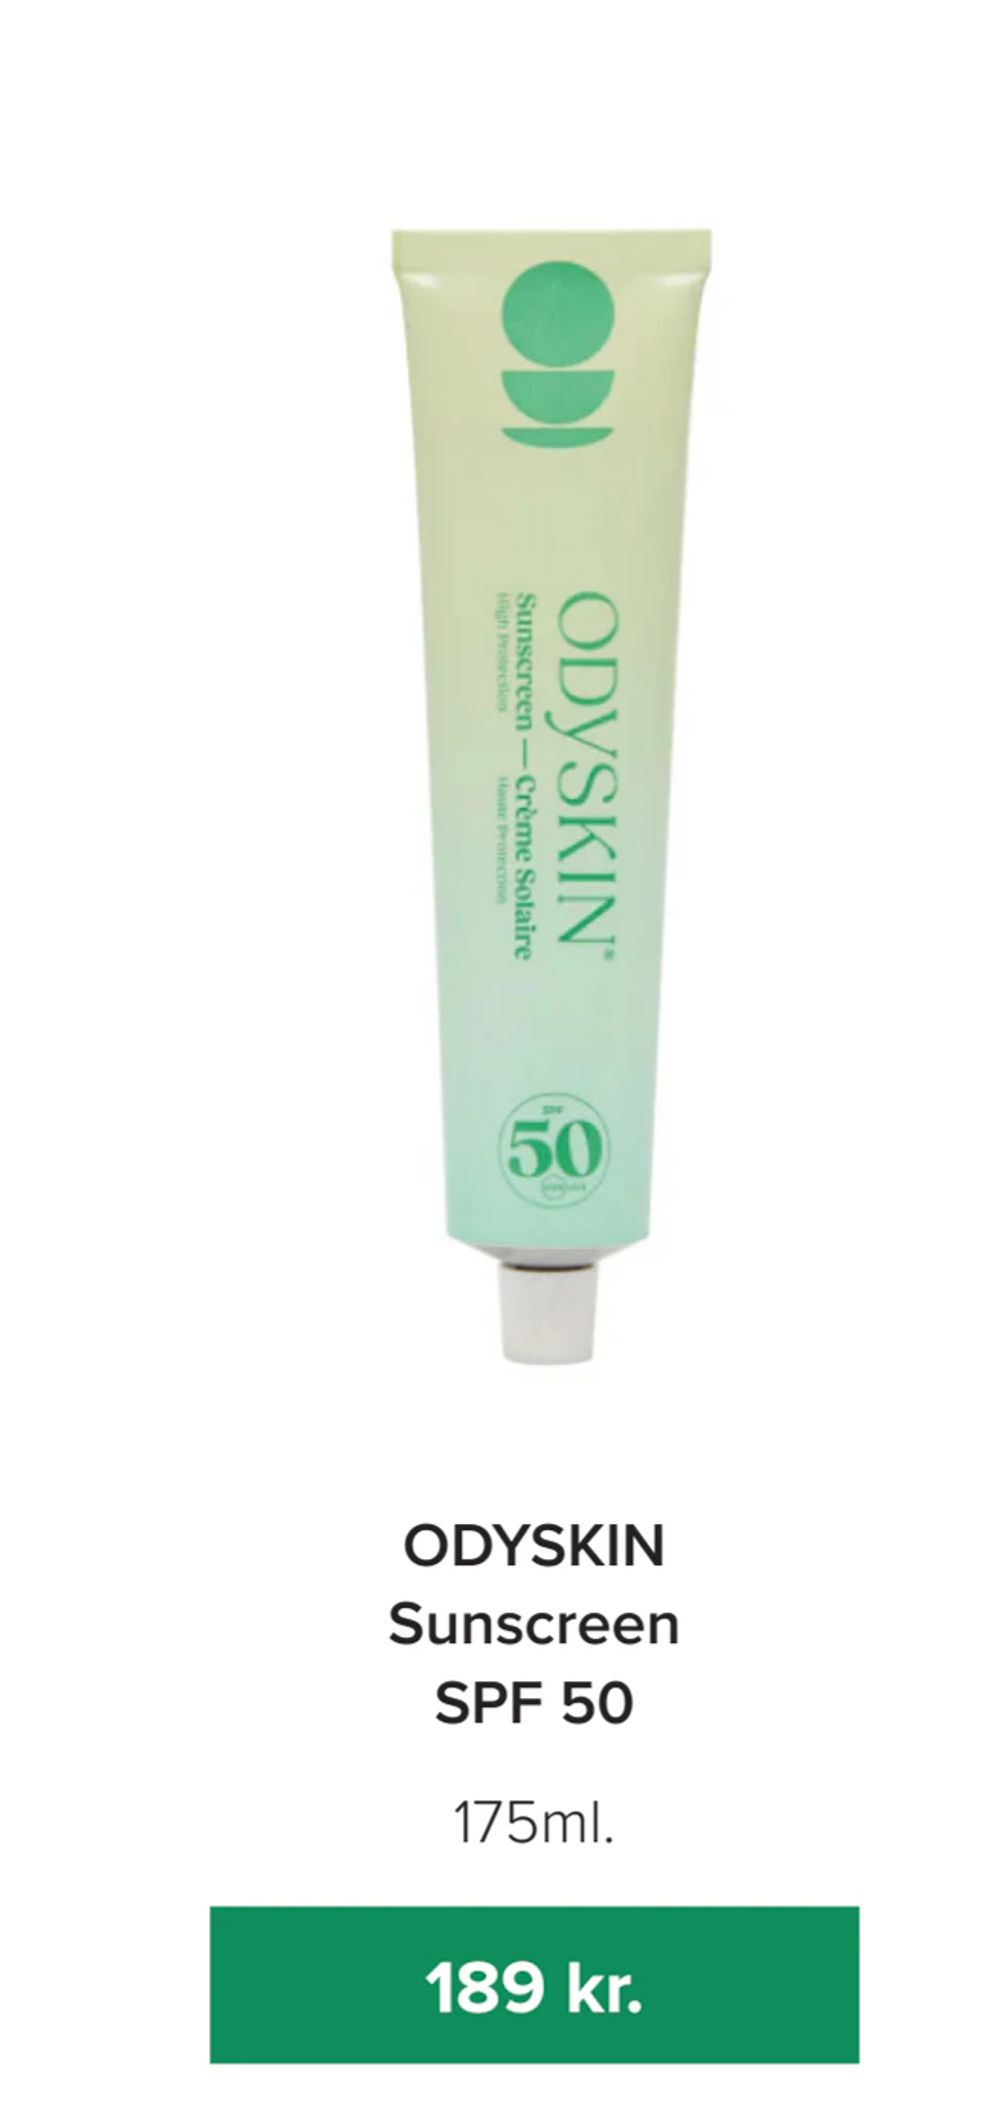 Tilbud på ODYSKIN Sunscreen SPF 50 fra Helsemin til 189 kr.